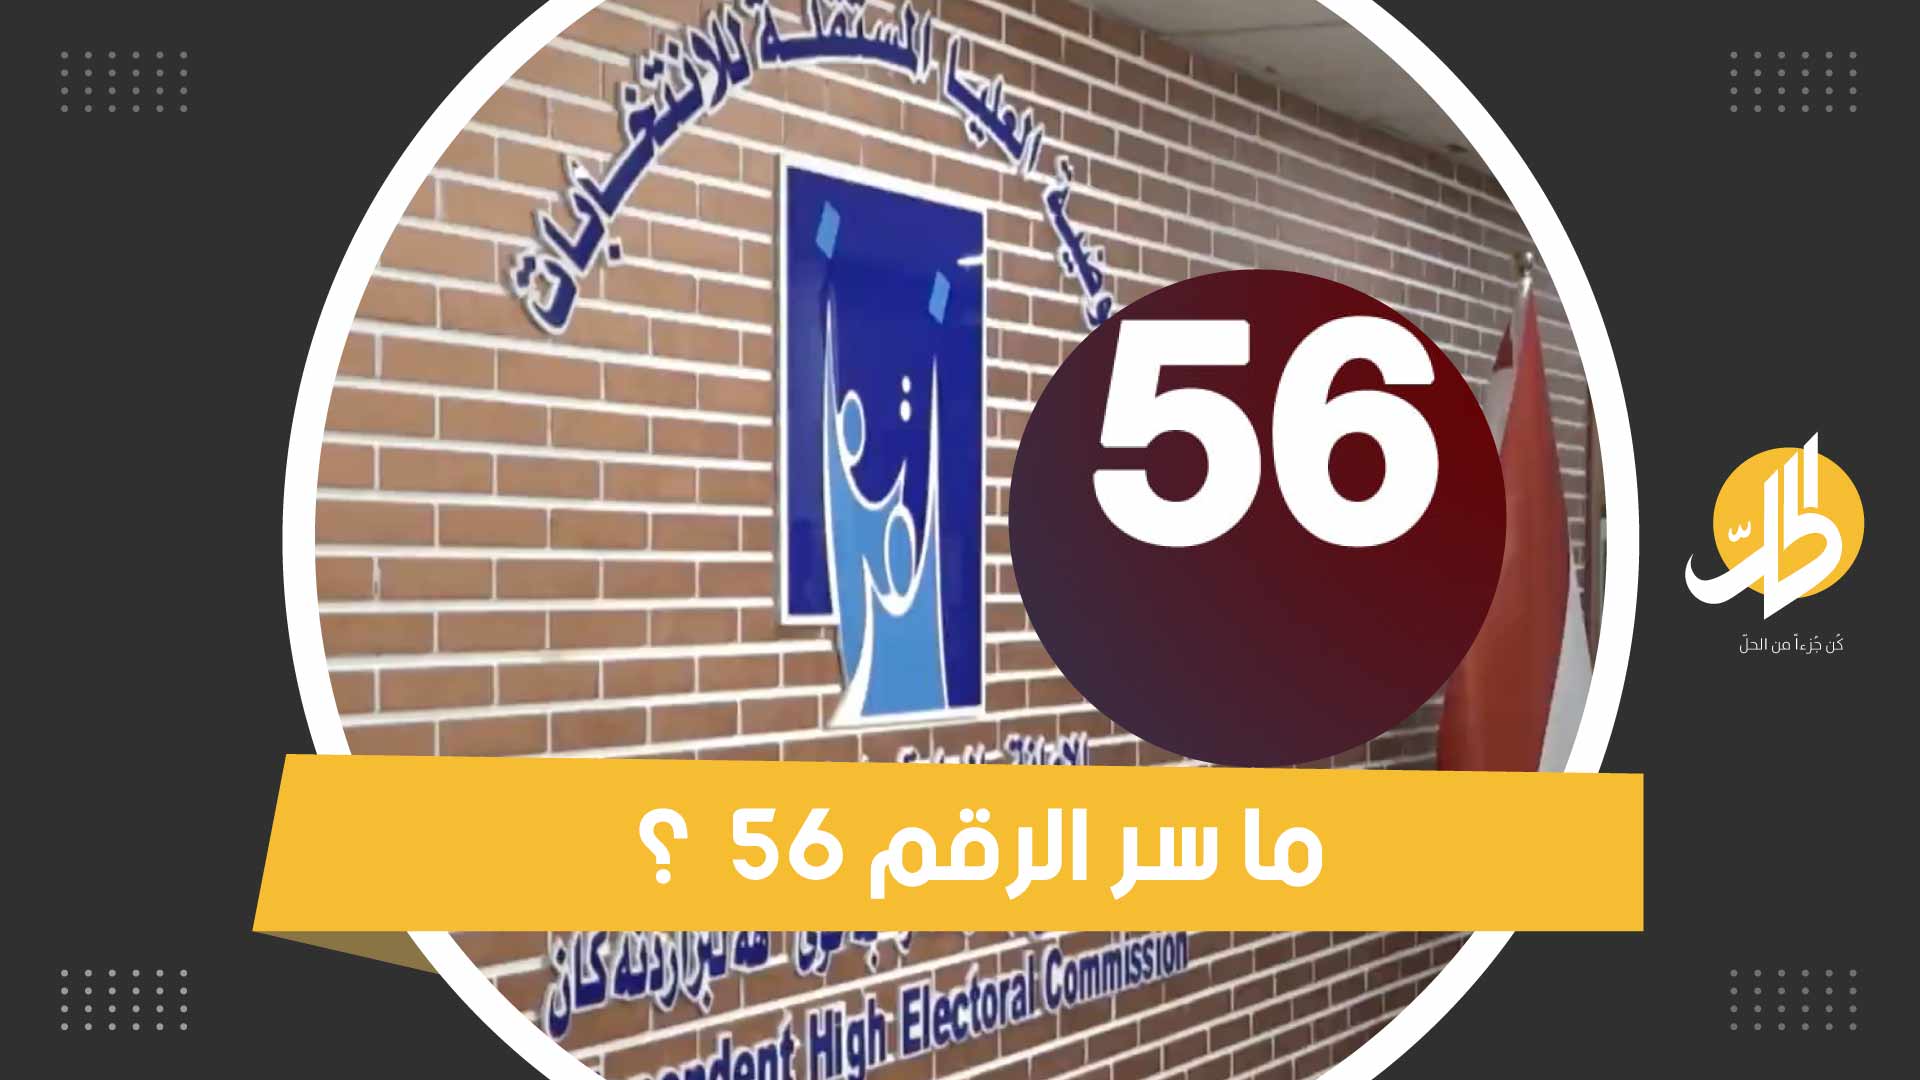 الرقم 56 .. يثير الجدل في العراق فما السر؟